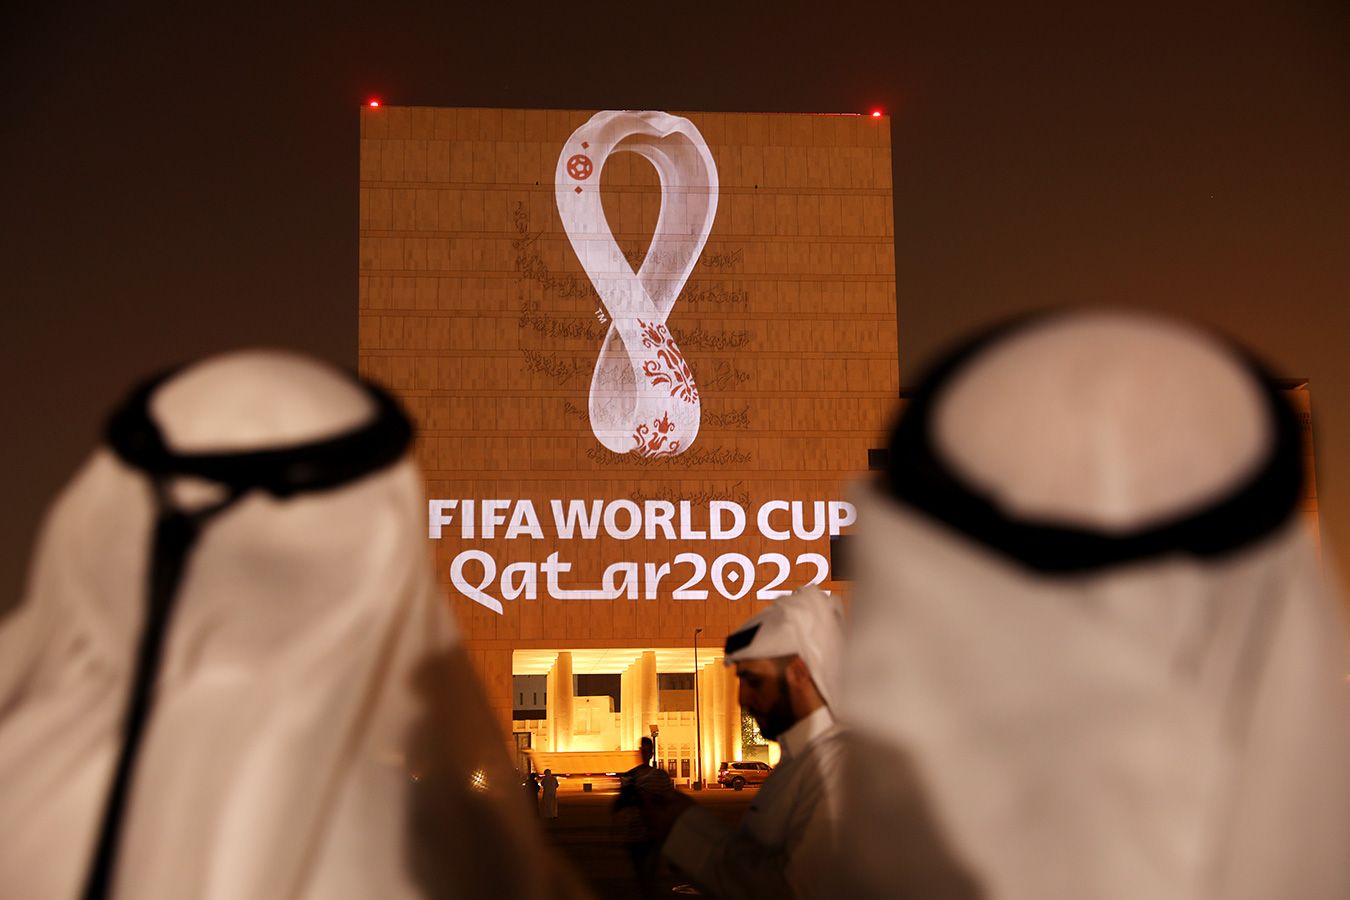 Королевская семья Катара требует запретить продажу пива на стадионах за 2 дня до начала ЧМ